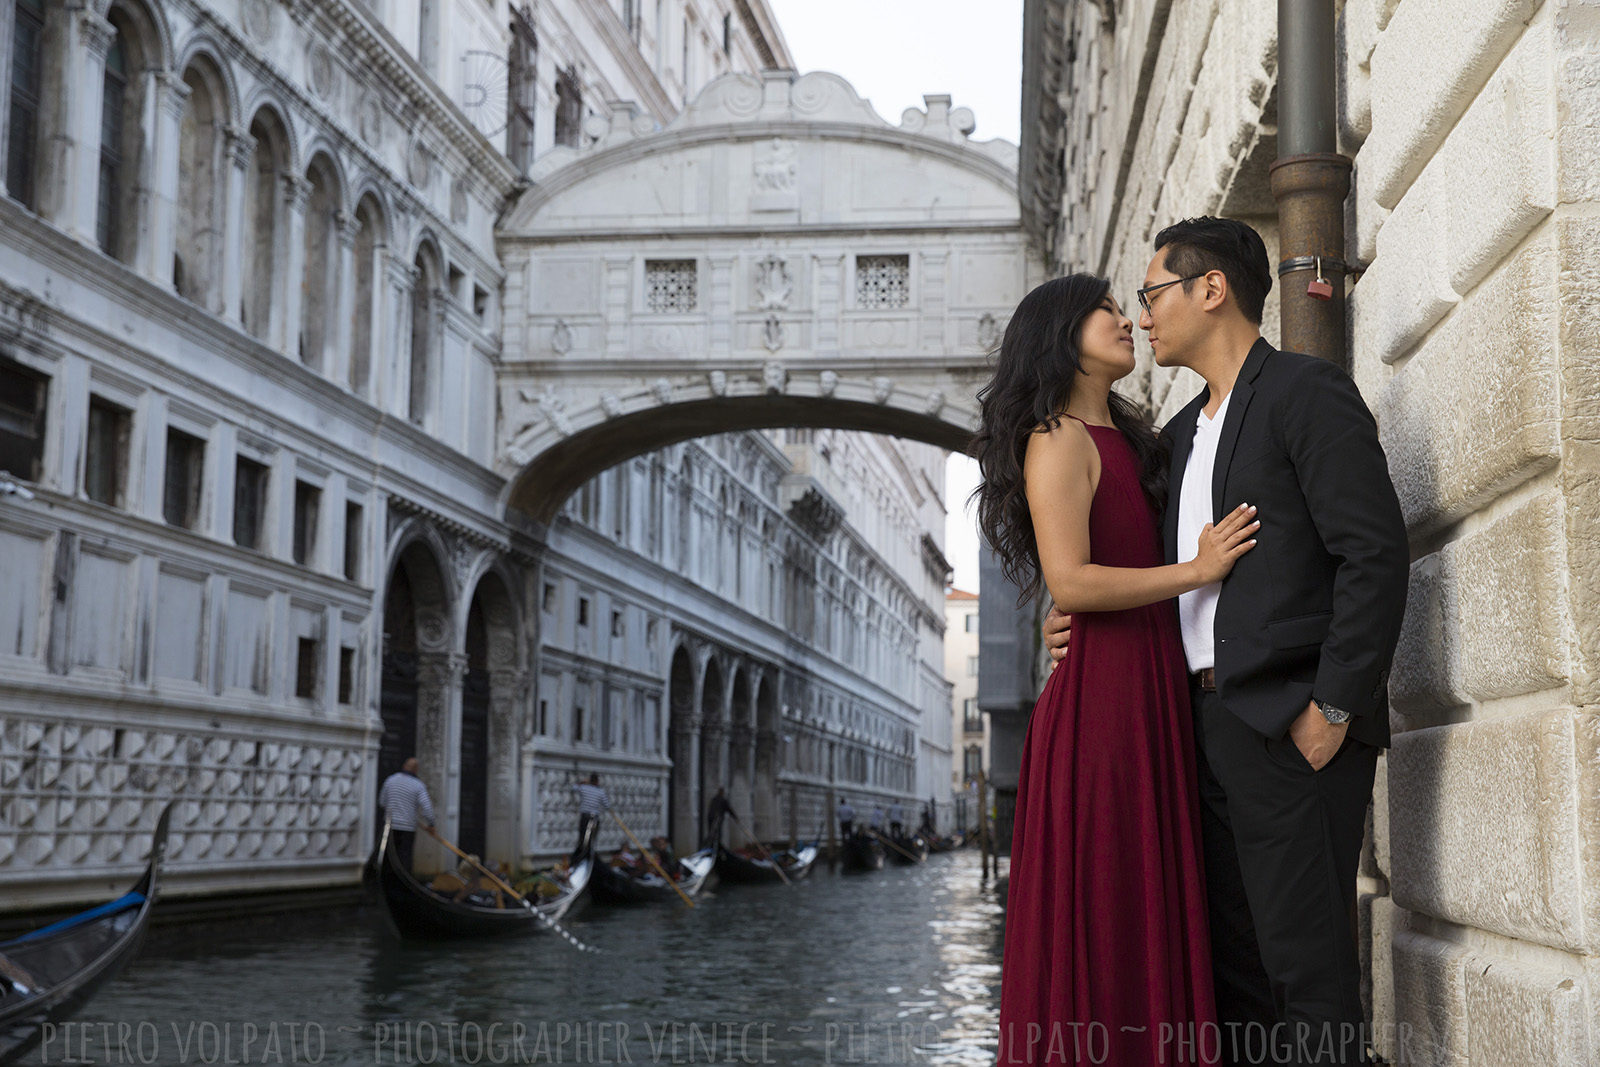 Fotografo Venezia servizio foto romantico divertente